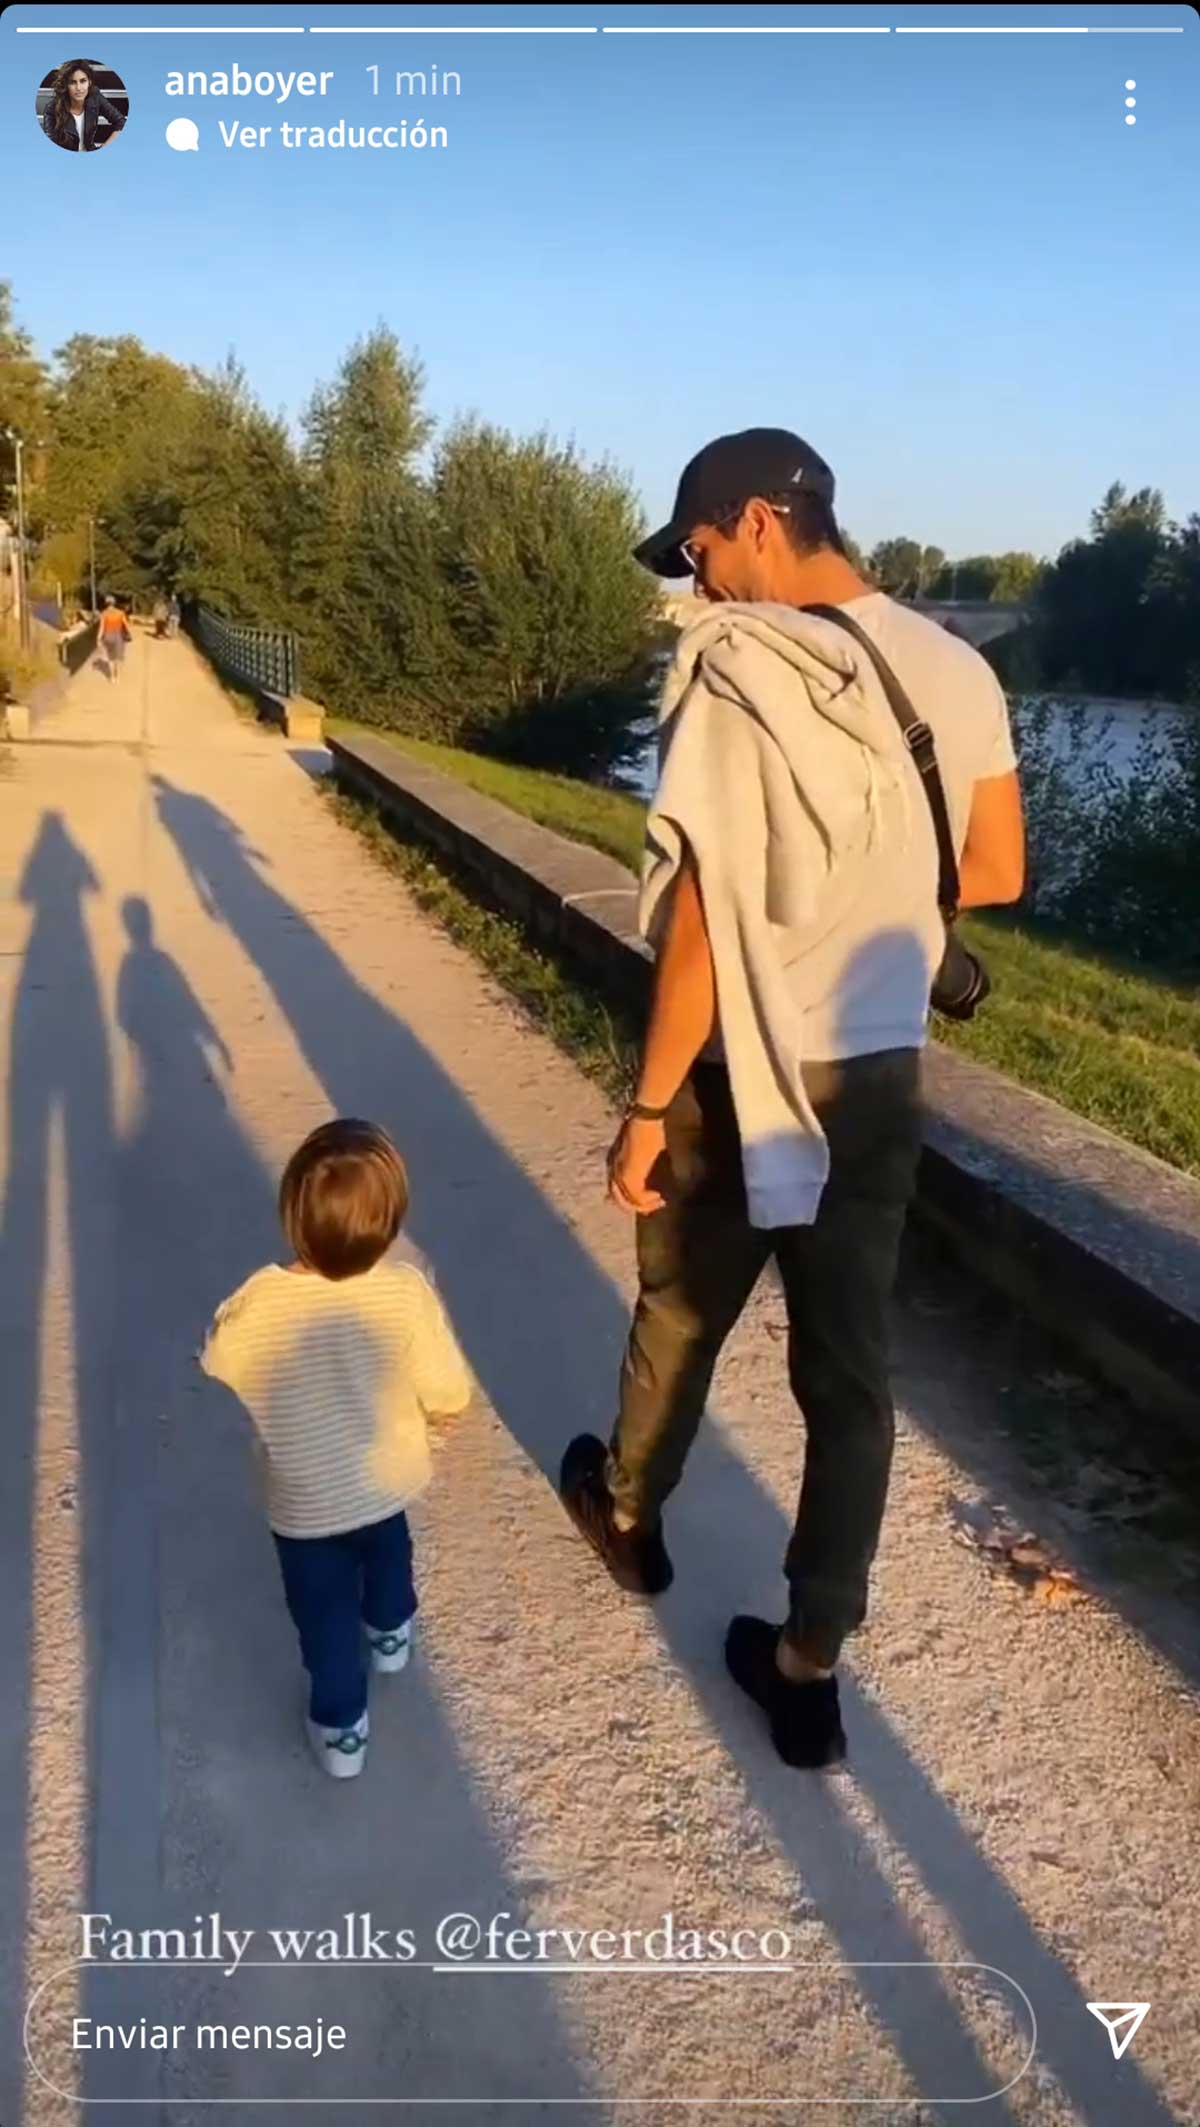 Ana Boyer enseña el tierno momento de Fernando Verdasco y su hijo Miguel en un paseo